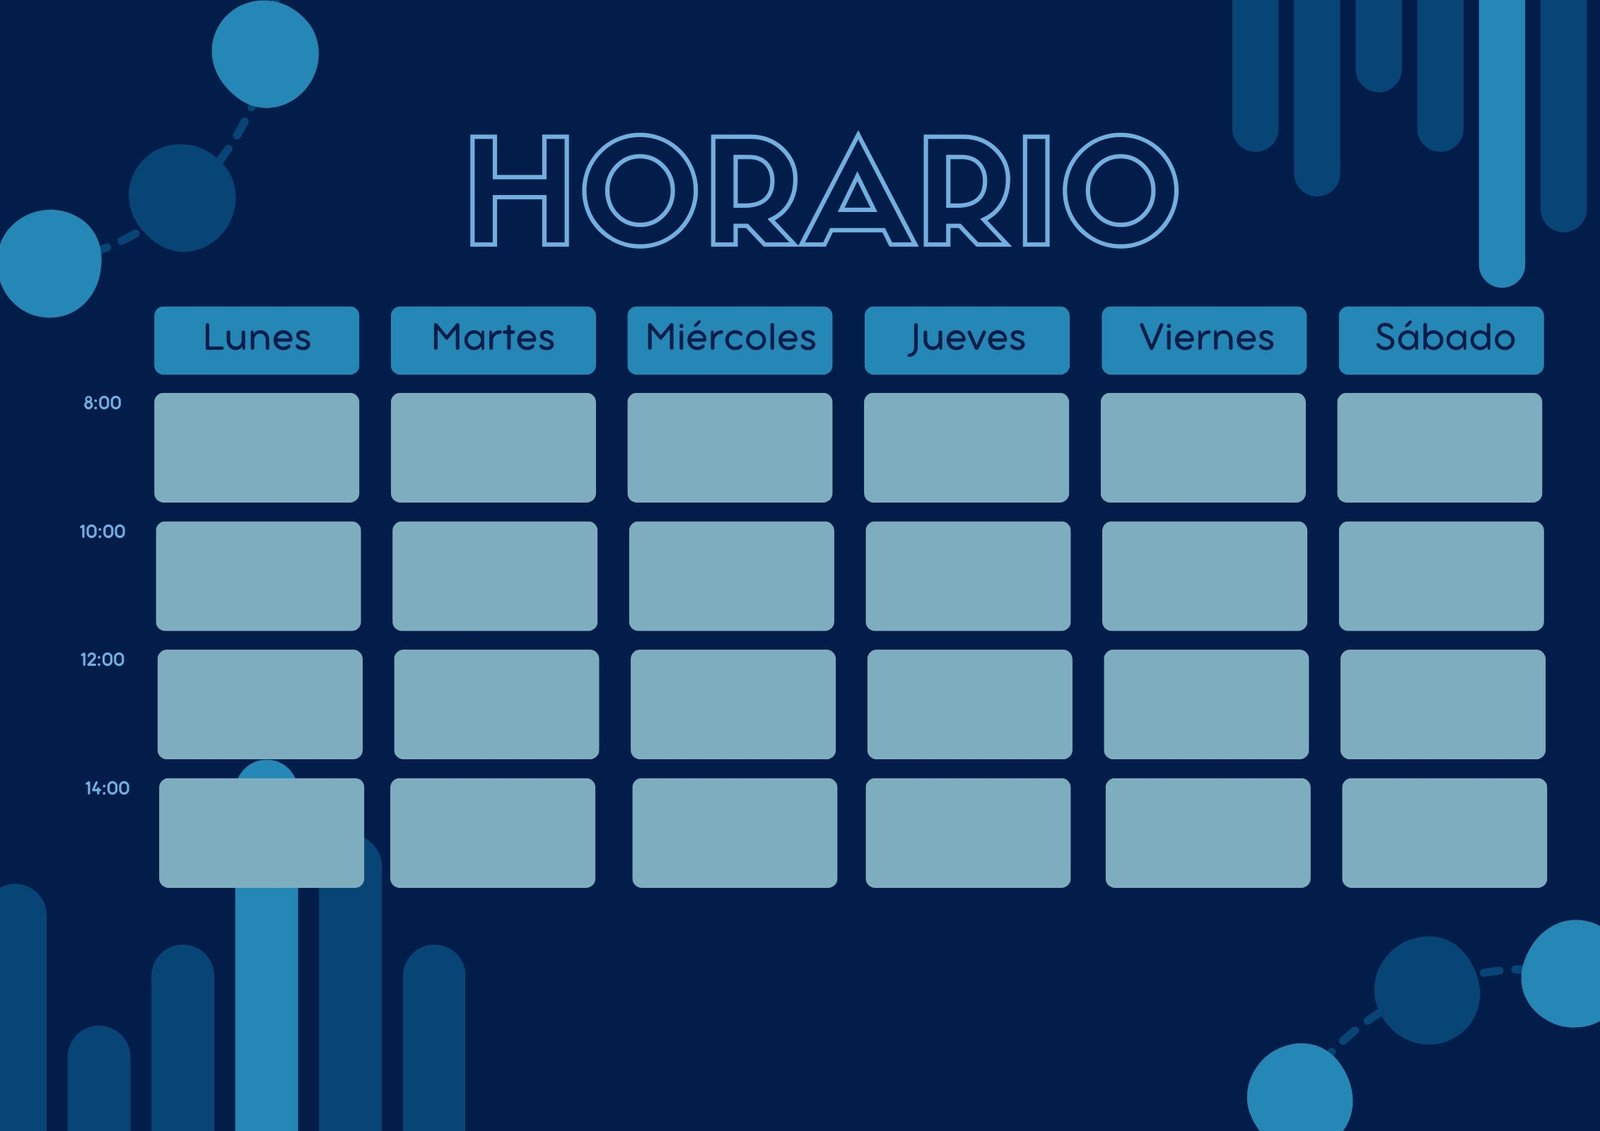 Crear Horario De Clases Plantillas para horarios de clases gratis | Canva